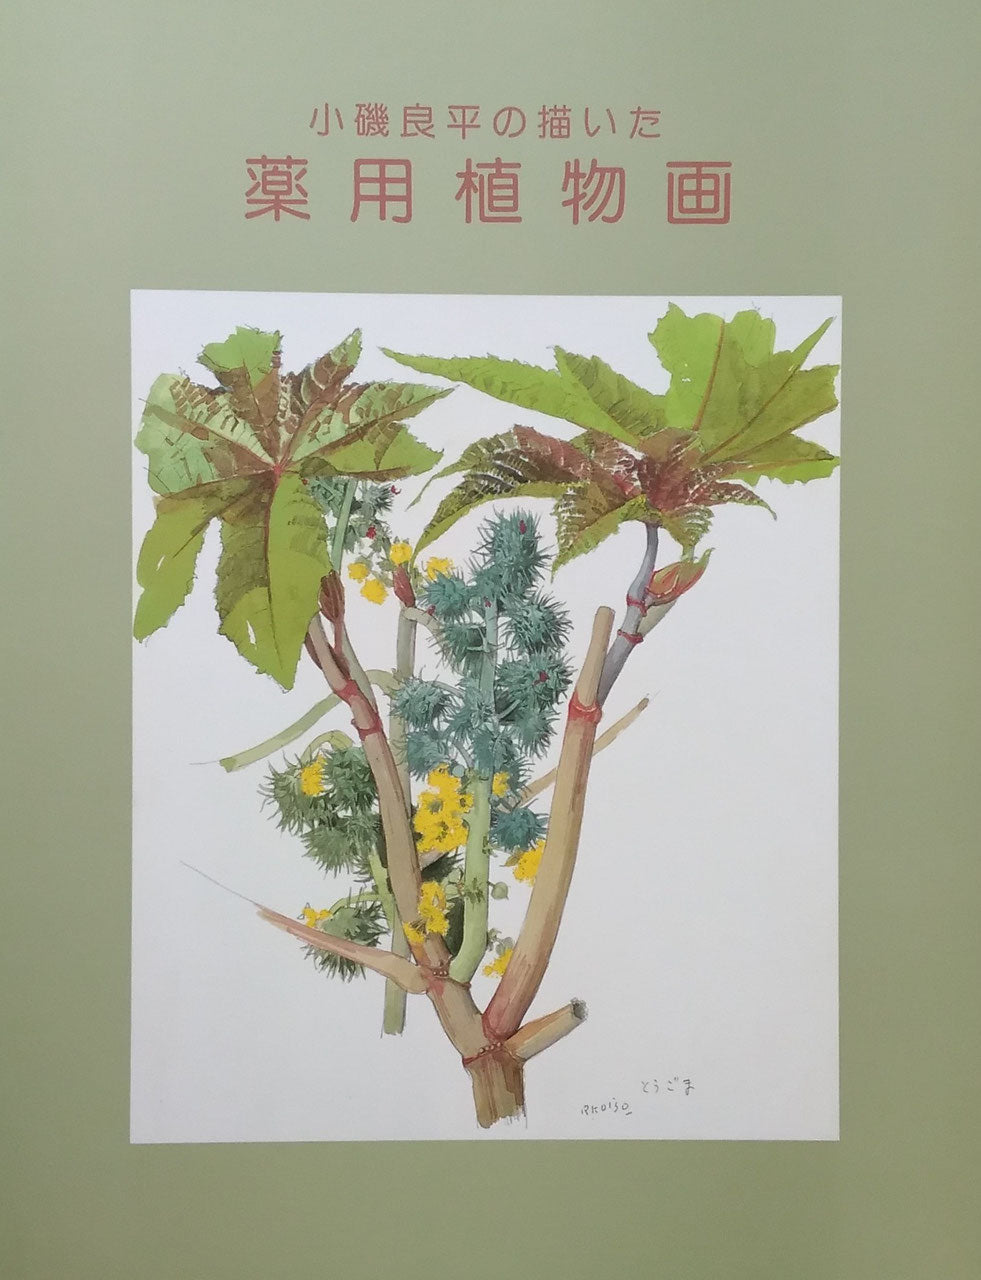 小磯良平の描いた 薬用植物画 – smokebooks shop